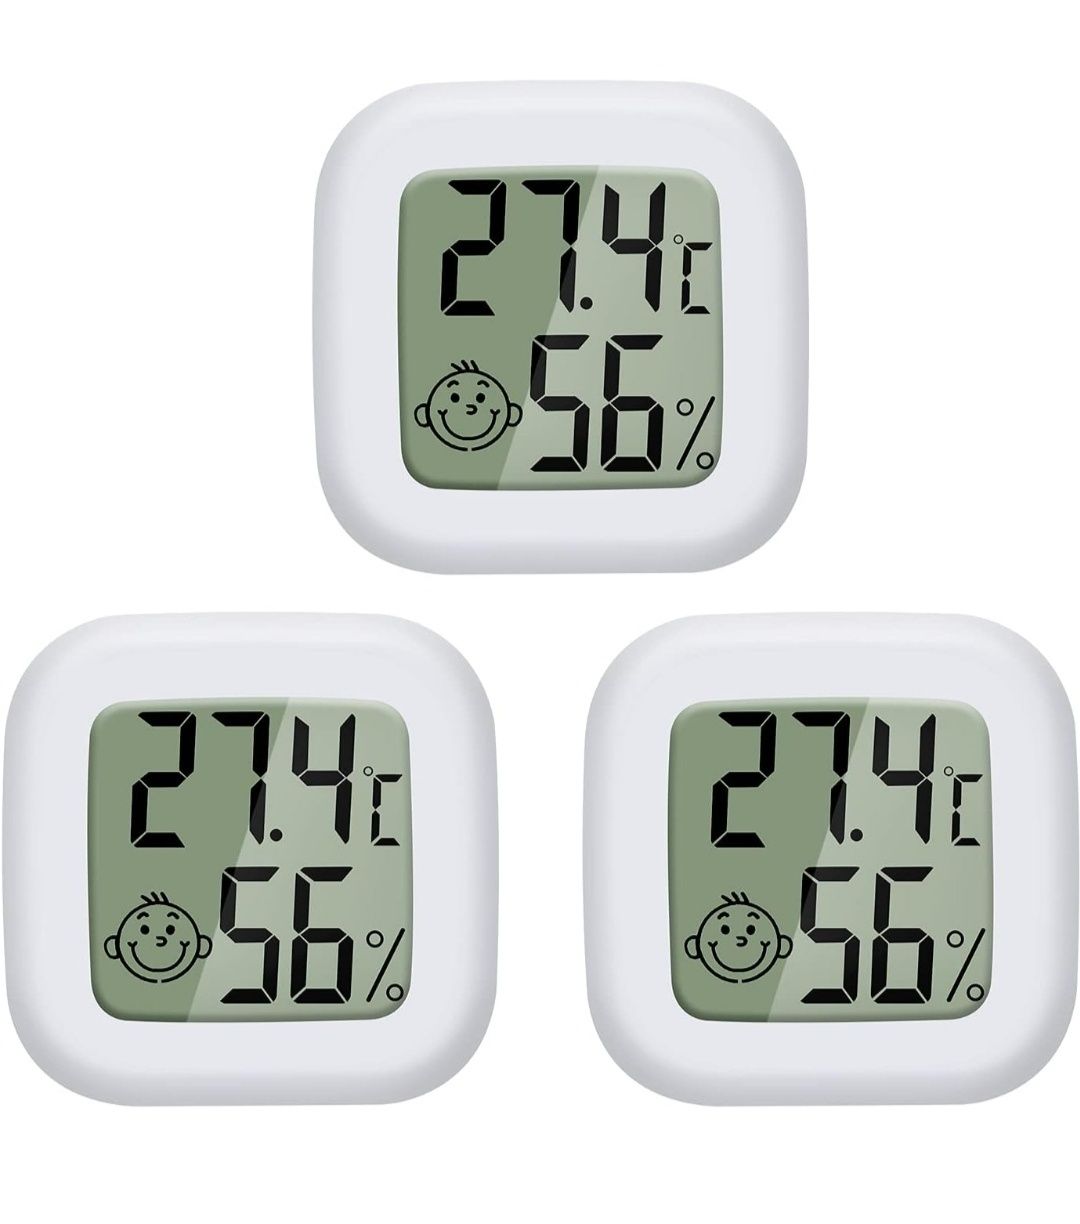 Indoor termometr hygrometer 3szt